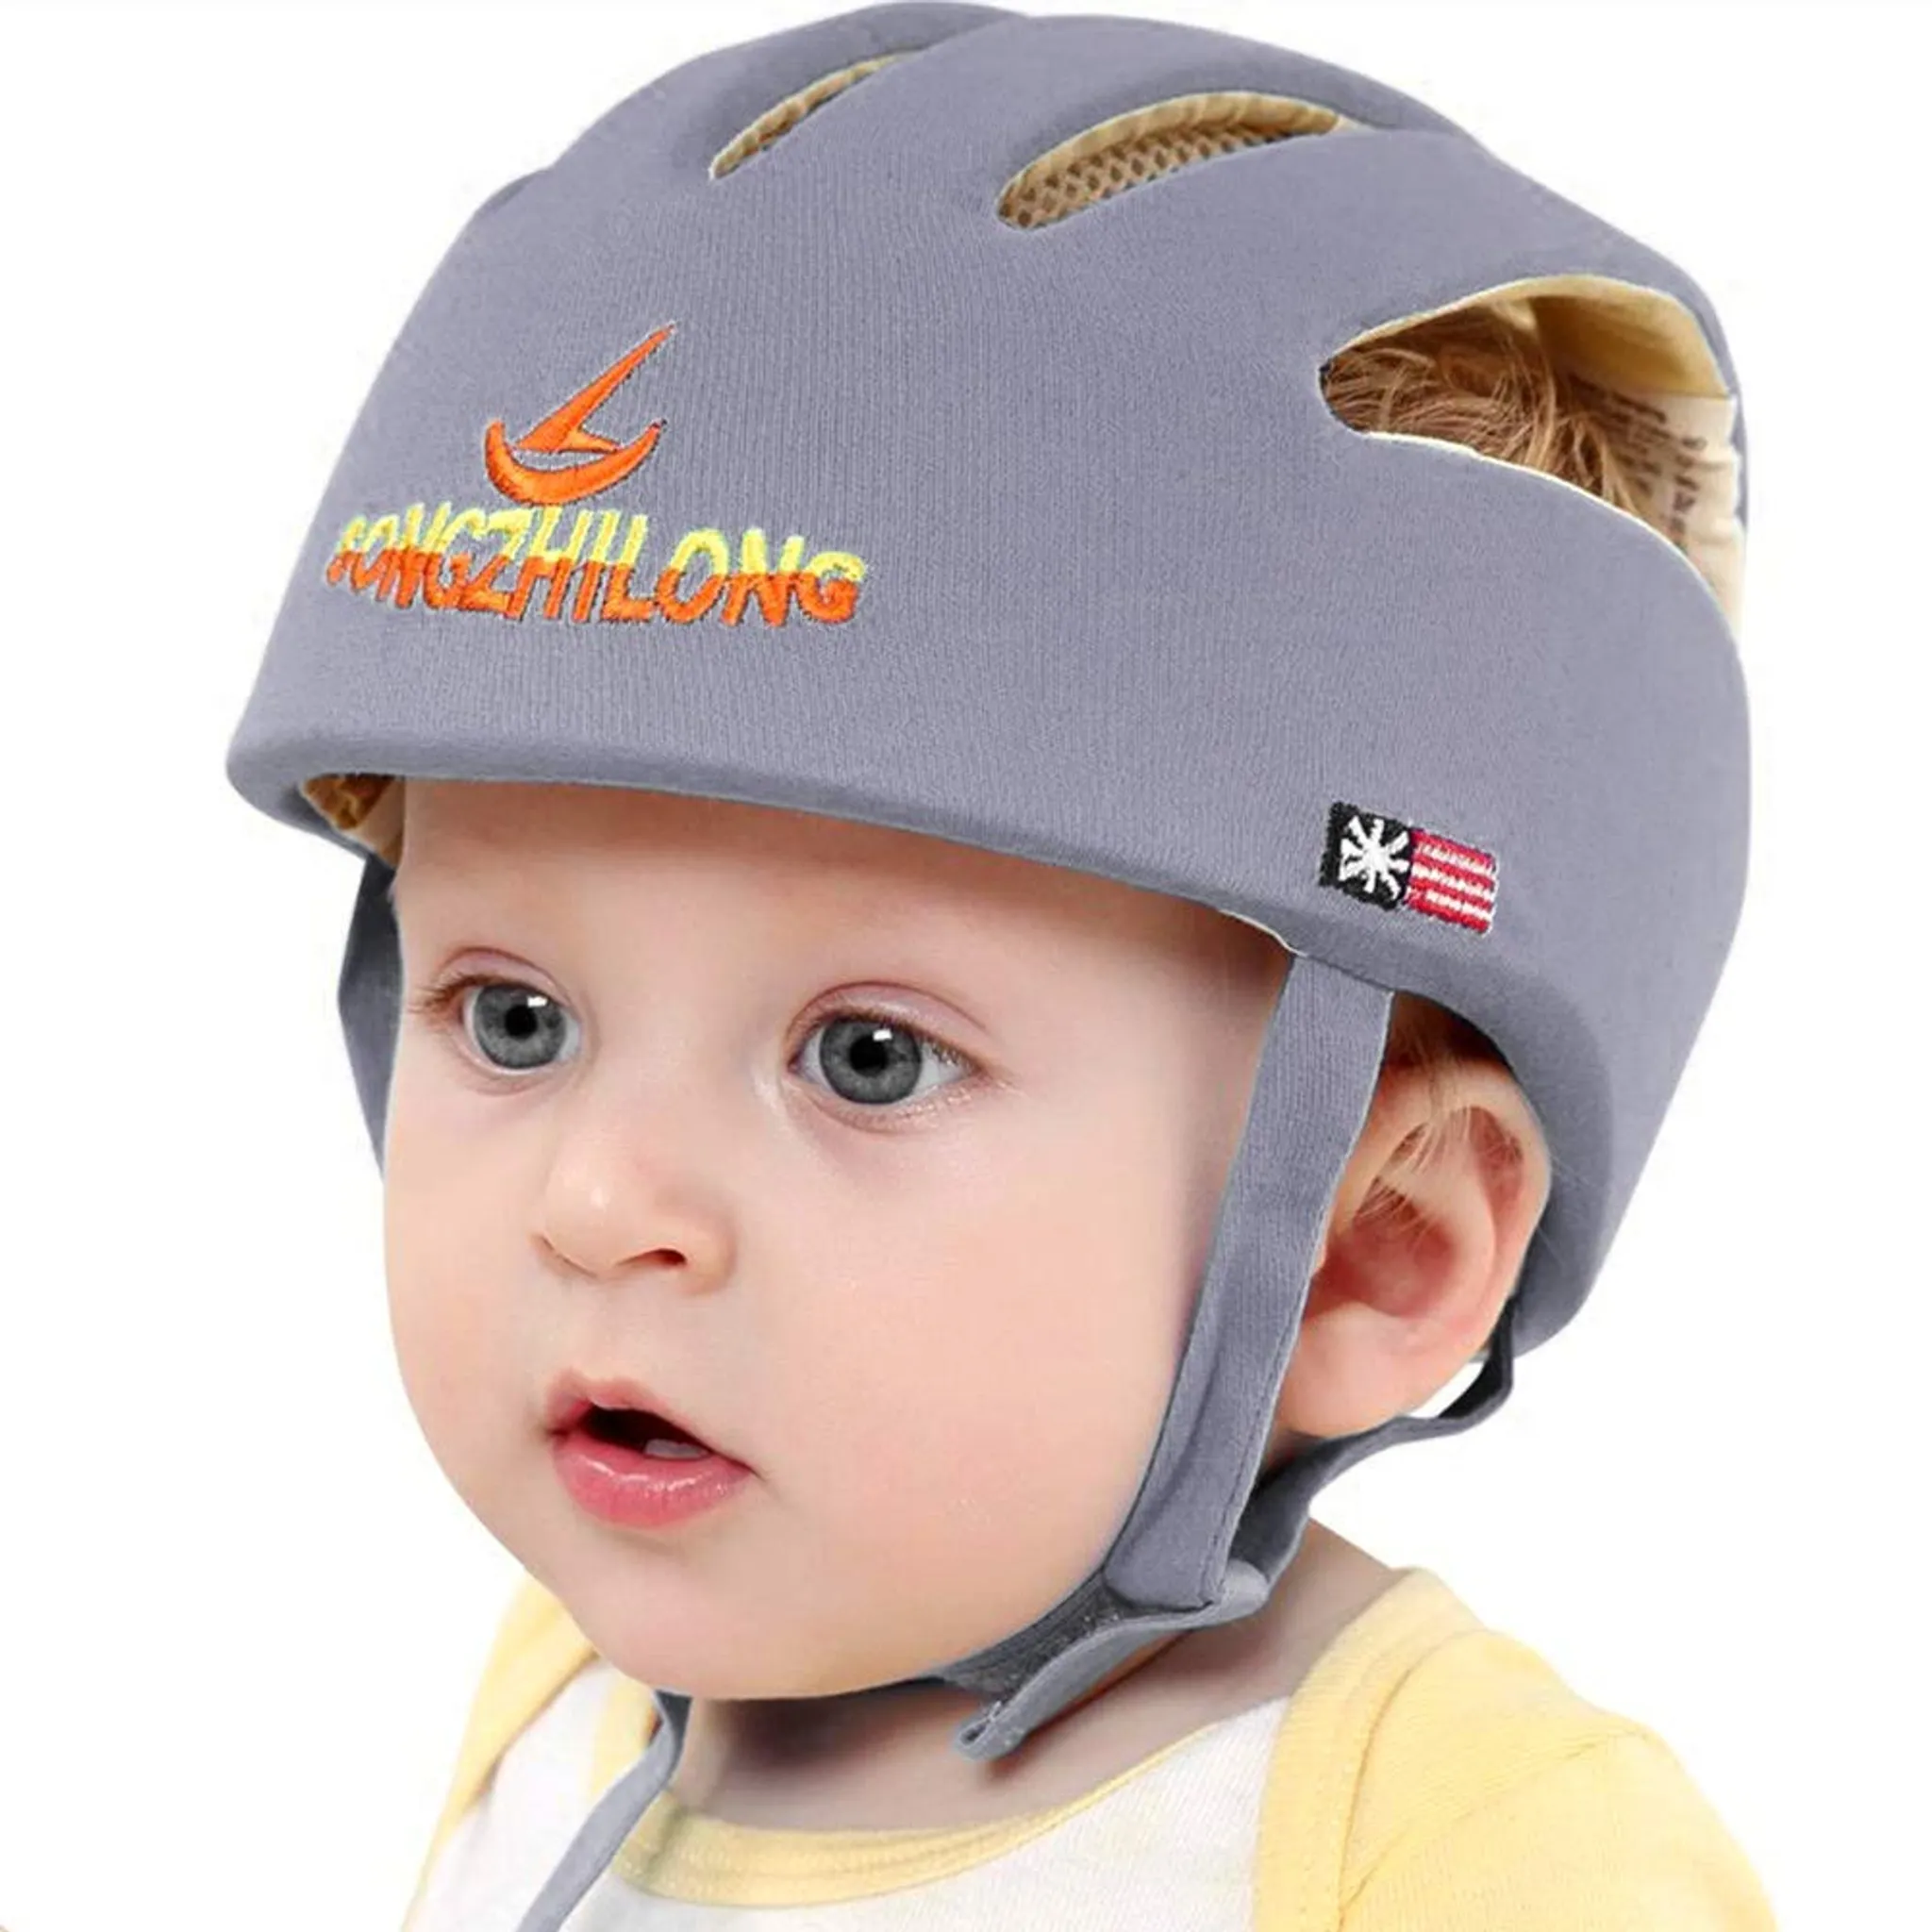 Baby Helm Kopfschutz Baby Schutzhelm Säugling Atmungsaktiv Sicherheit Kopfschutz Mütze Kinder Schutzhelm Baumwolle Hut Kleinkind Verstellbarer Kopfschutzkappe Lernen Laufen und Sitzen 